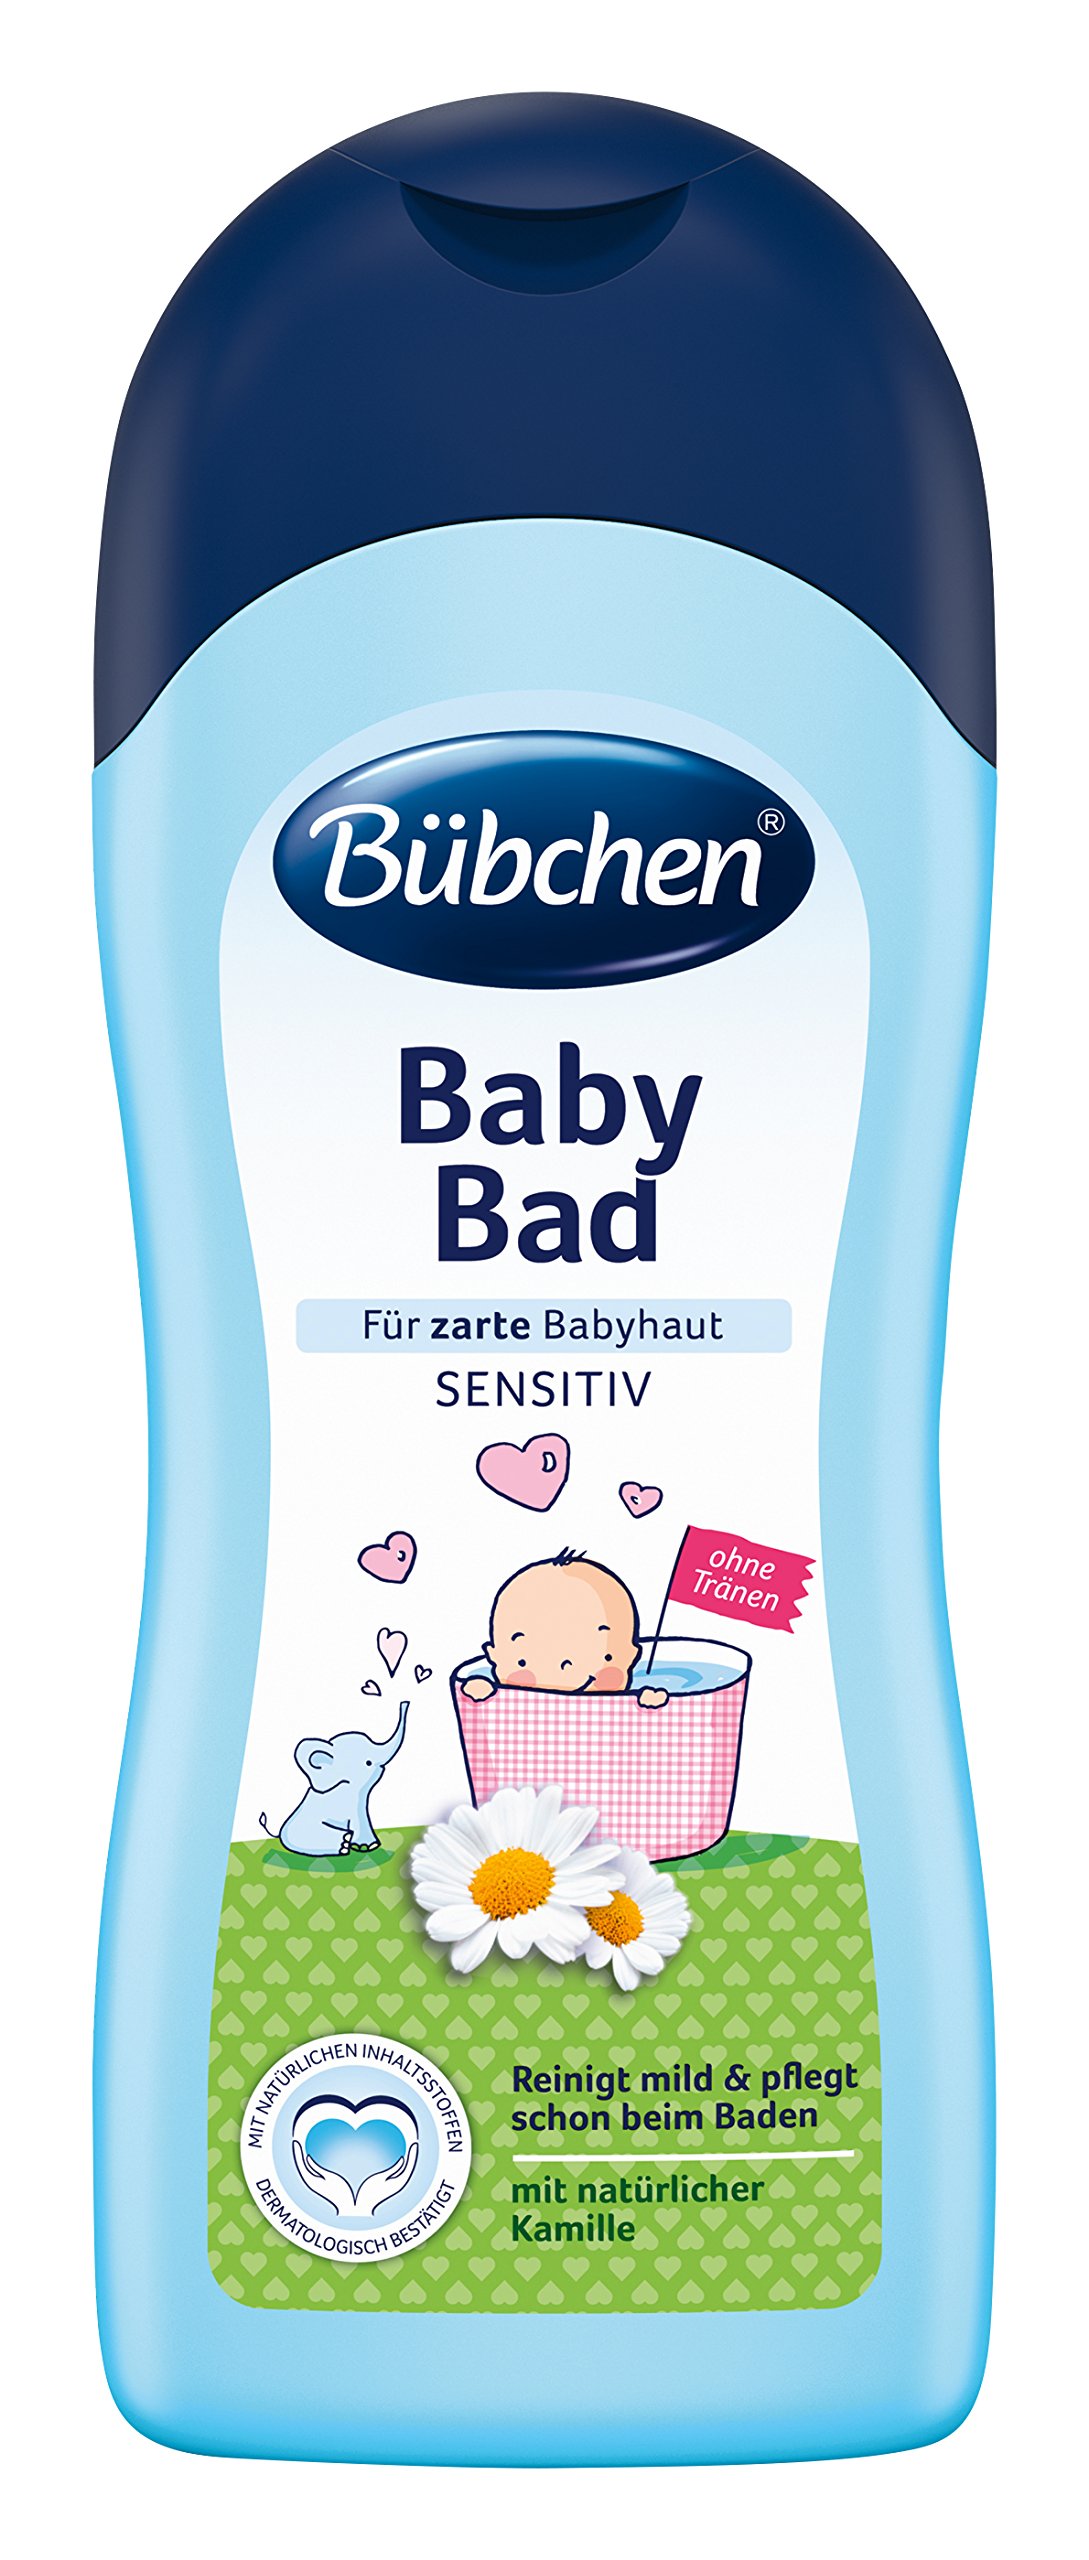 Baby Bath 1000ml foam bath by Bubchen